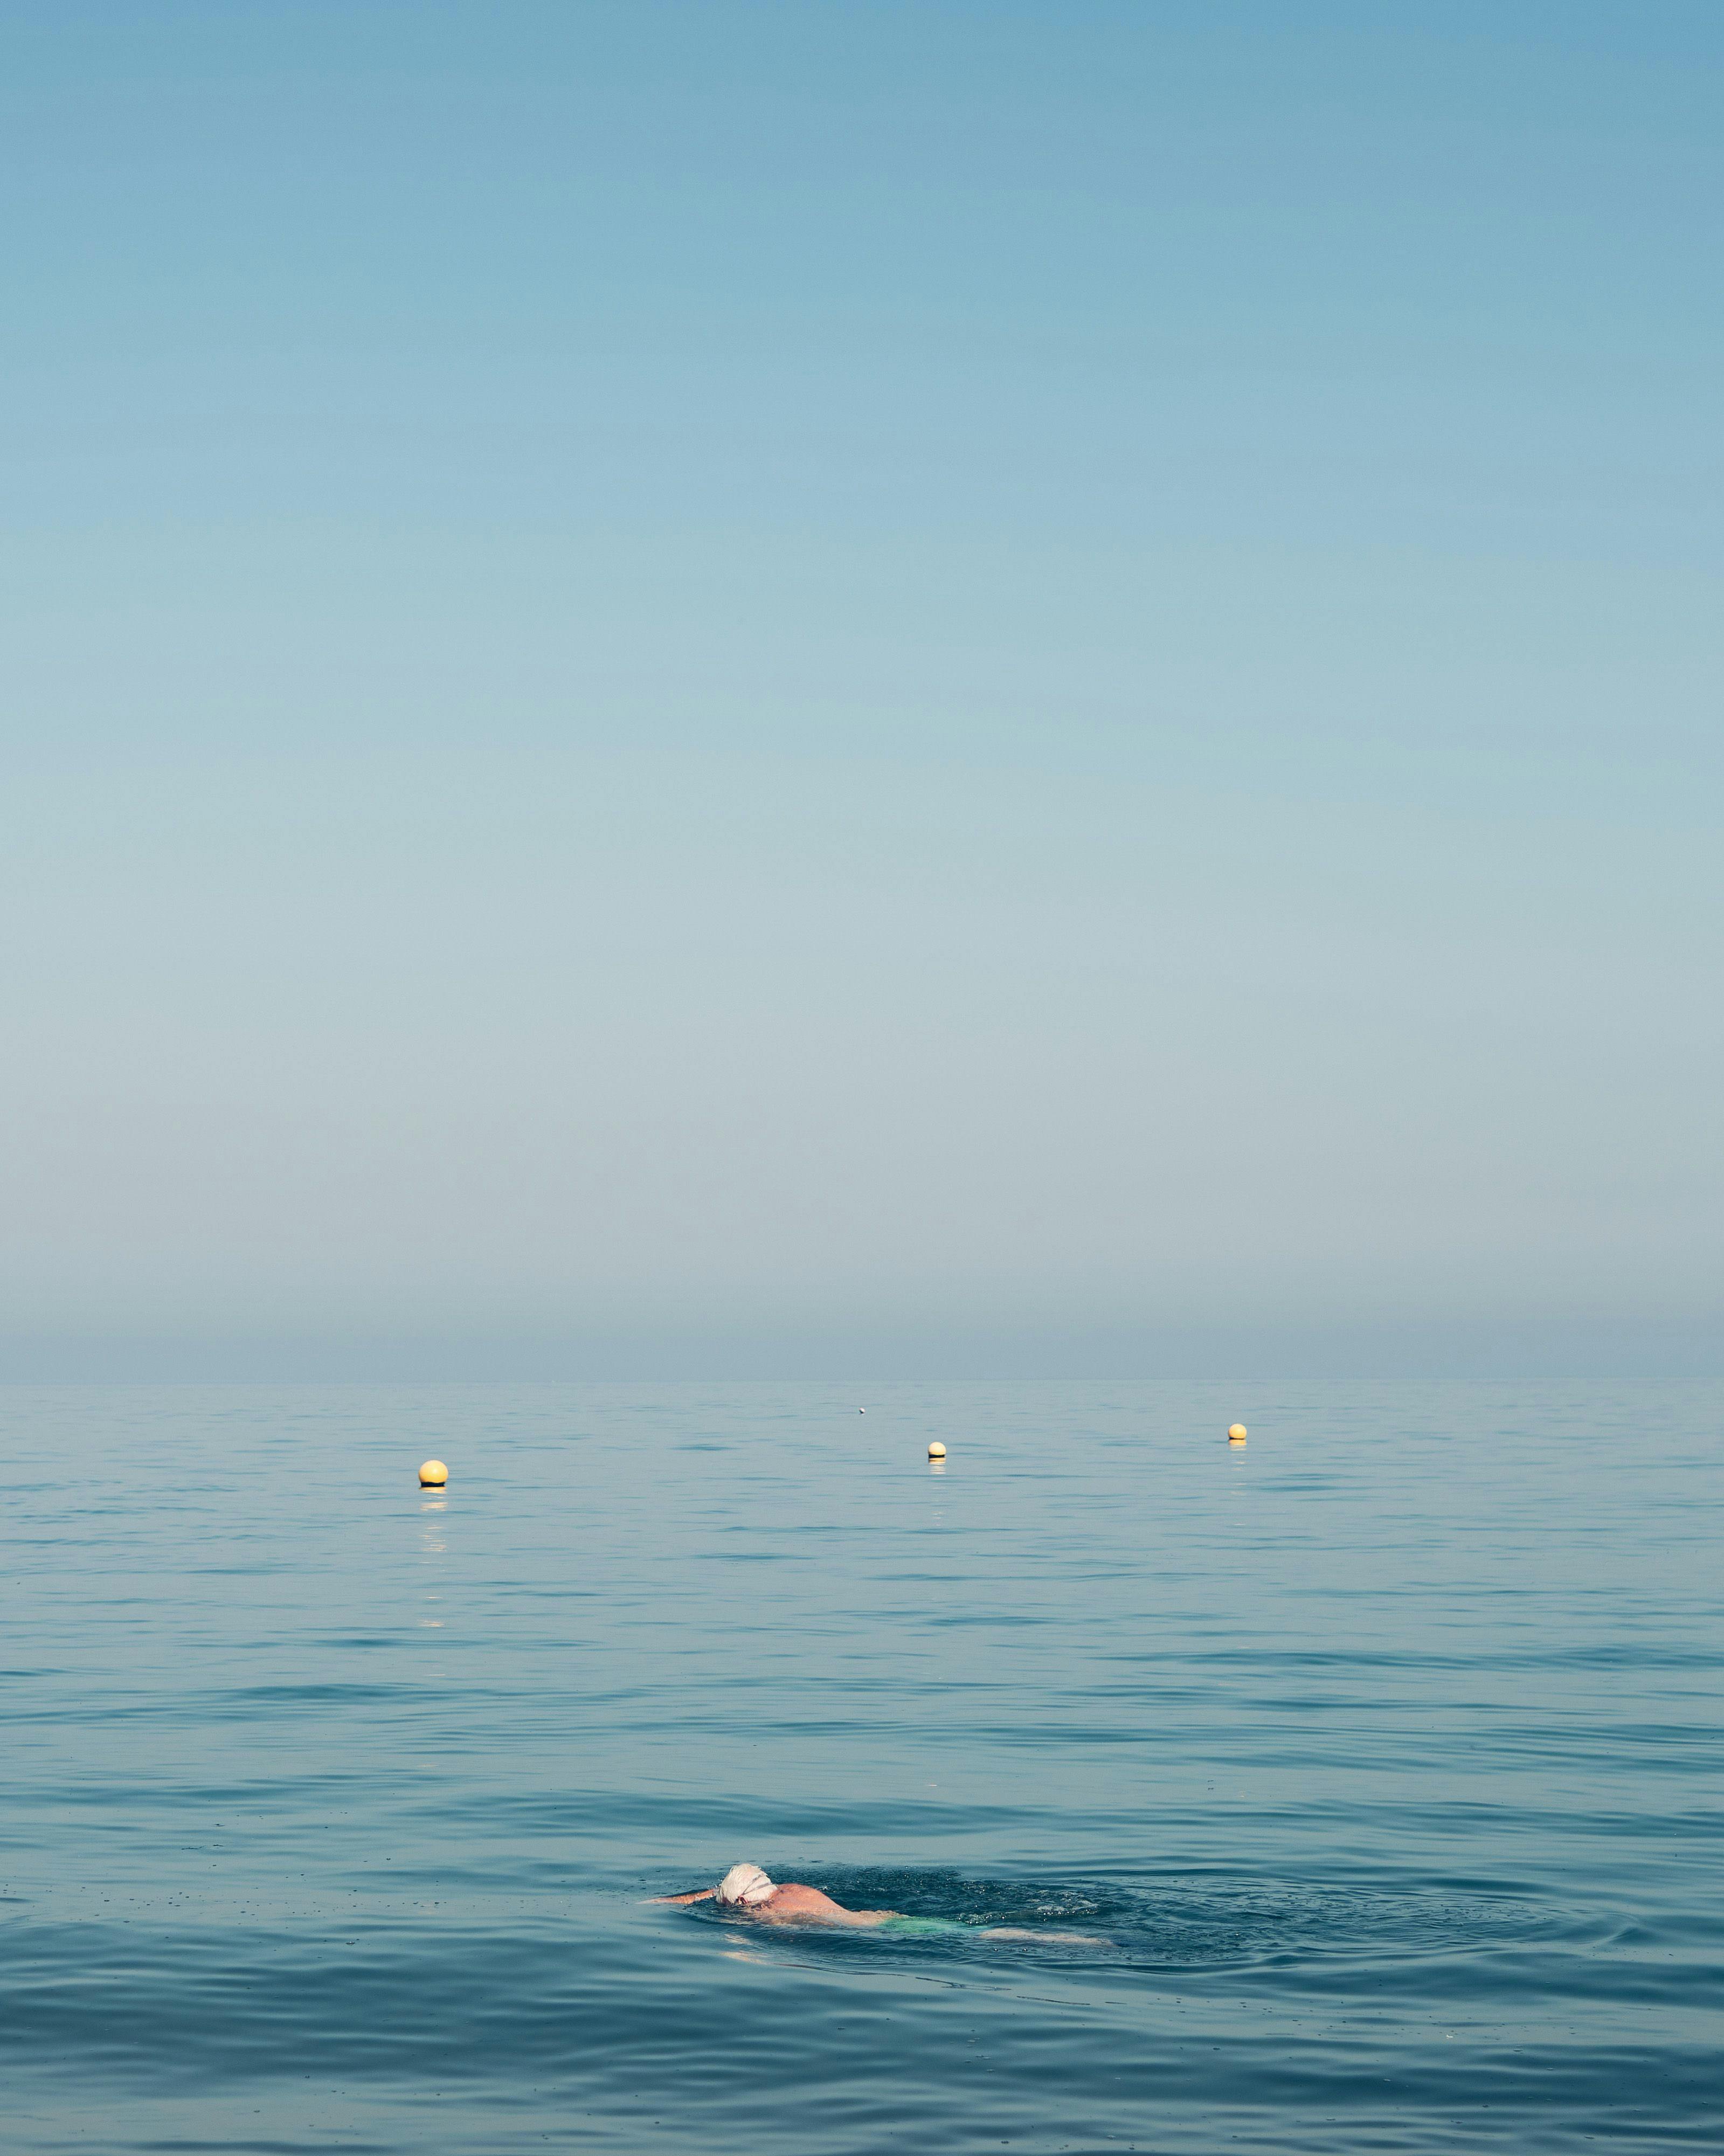 A swimmer cutting through the sea